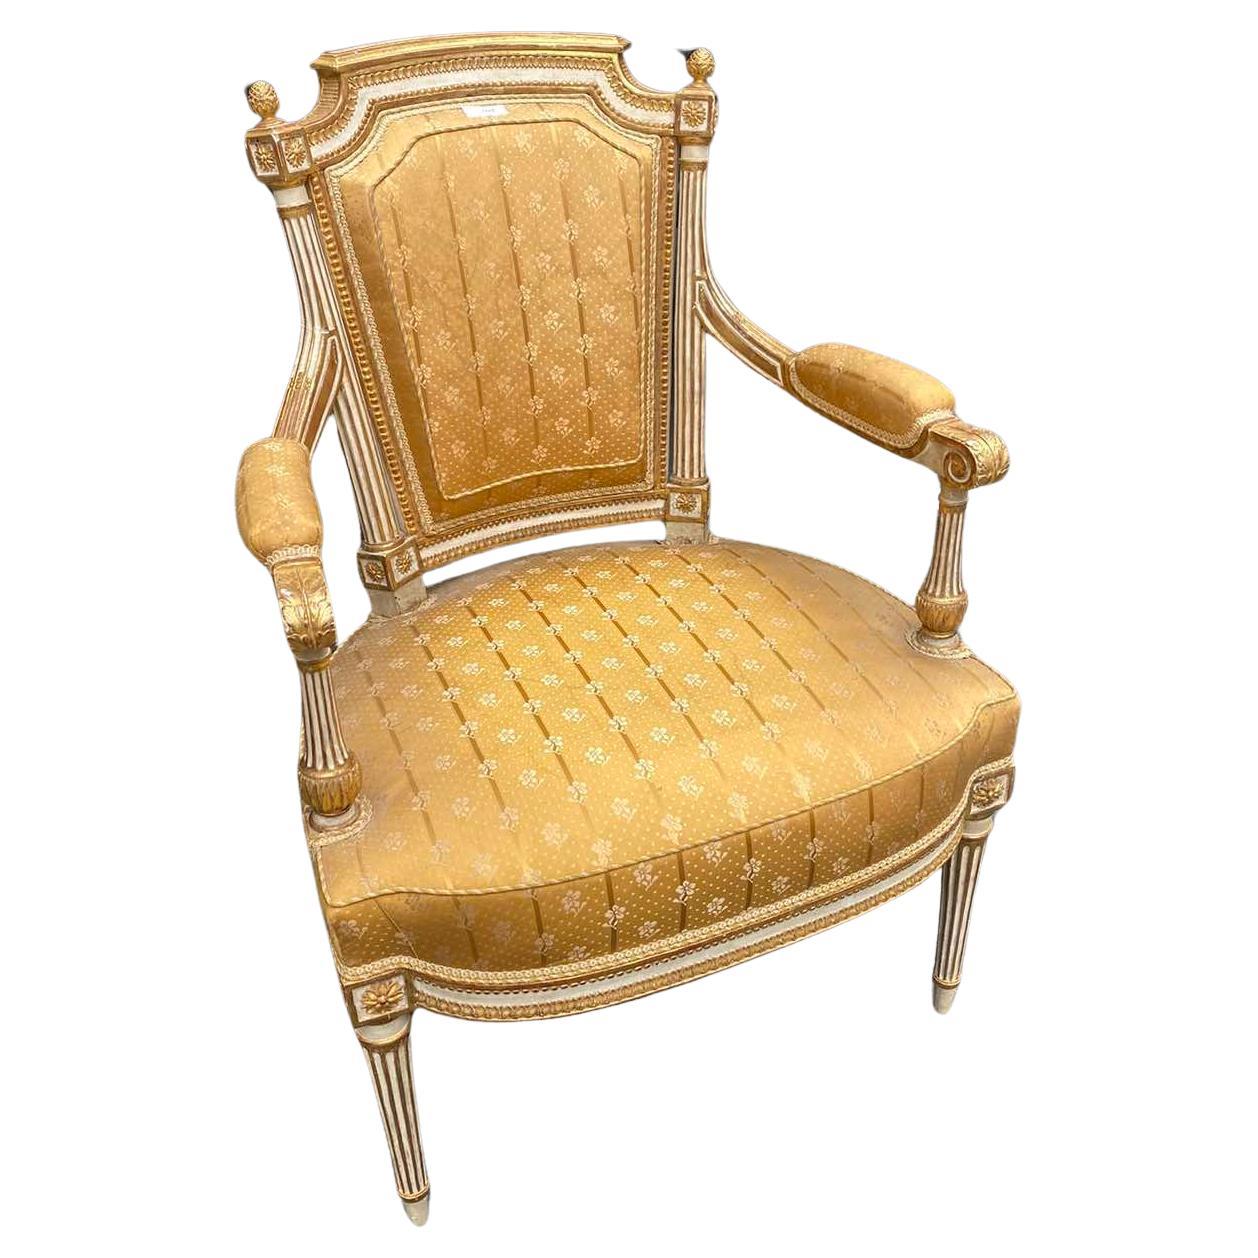 Rare fauteuil authentique réalisé par Jean-Baptiste Boulard à la fin du XVIIIe siècle. Il s'agit d'une très belle pièce sculptée et peinte à la main avec de superbes détails, tapissée de soie jaune à dorée par Lelievre. Très bon état, sans